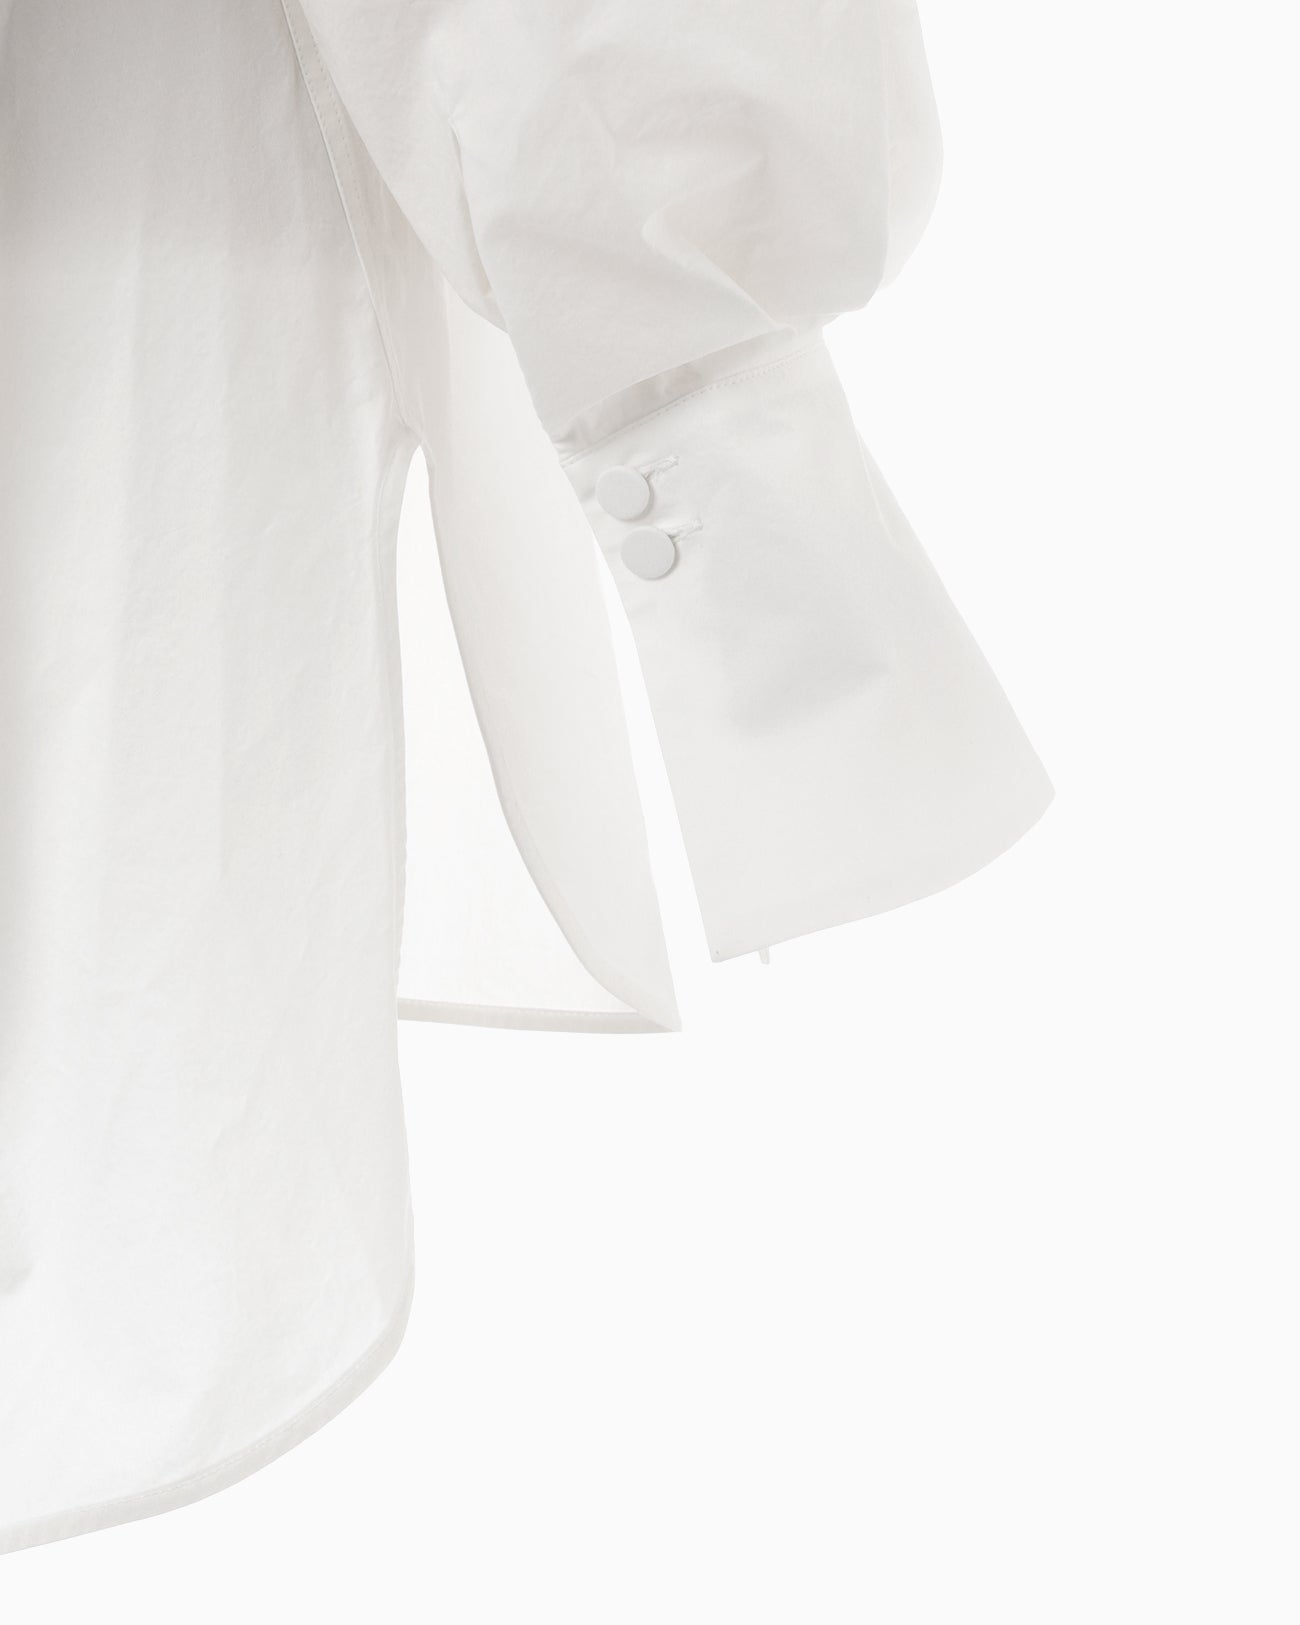 Nidom Cotton Oversized Shirt - white